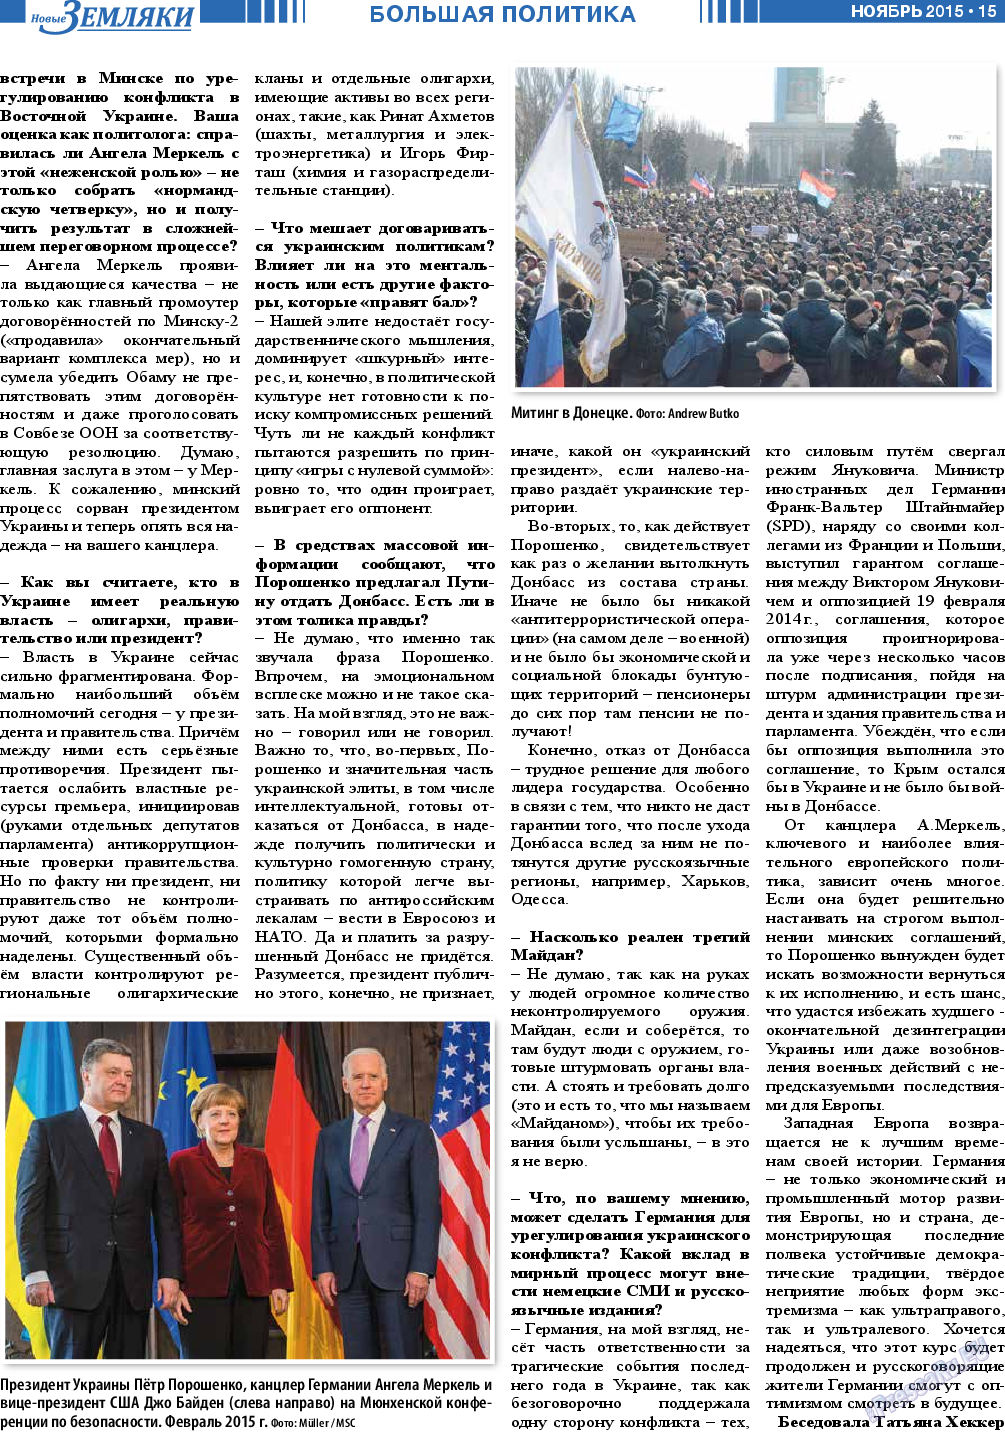 Новые Земляки, газета. 2015 №11 стр.15